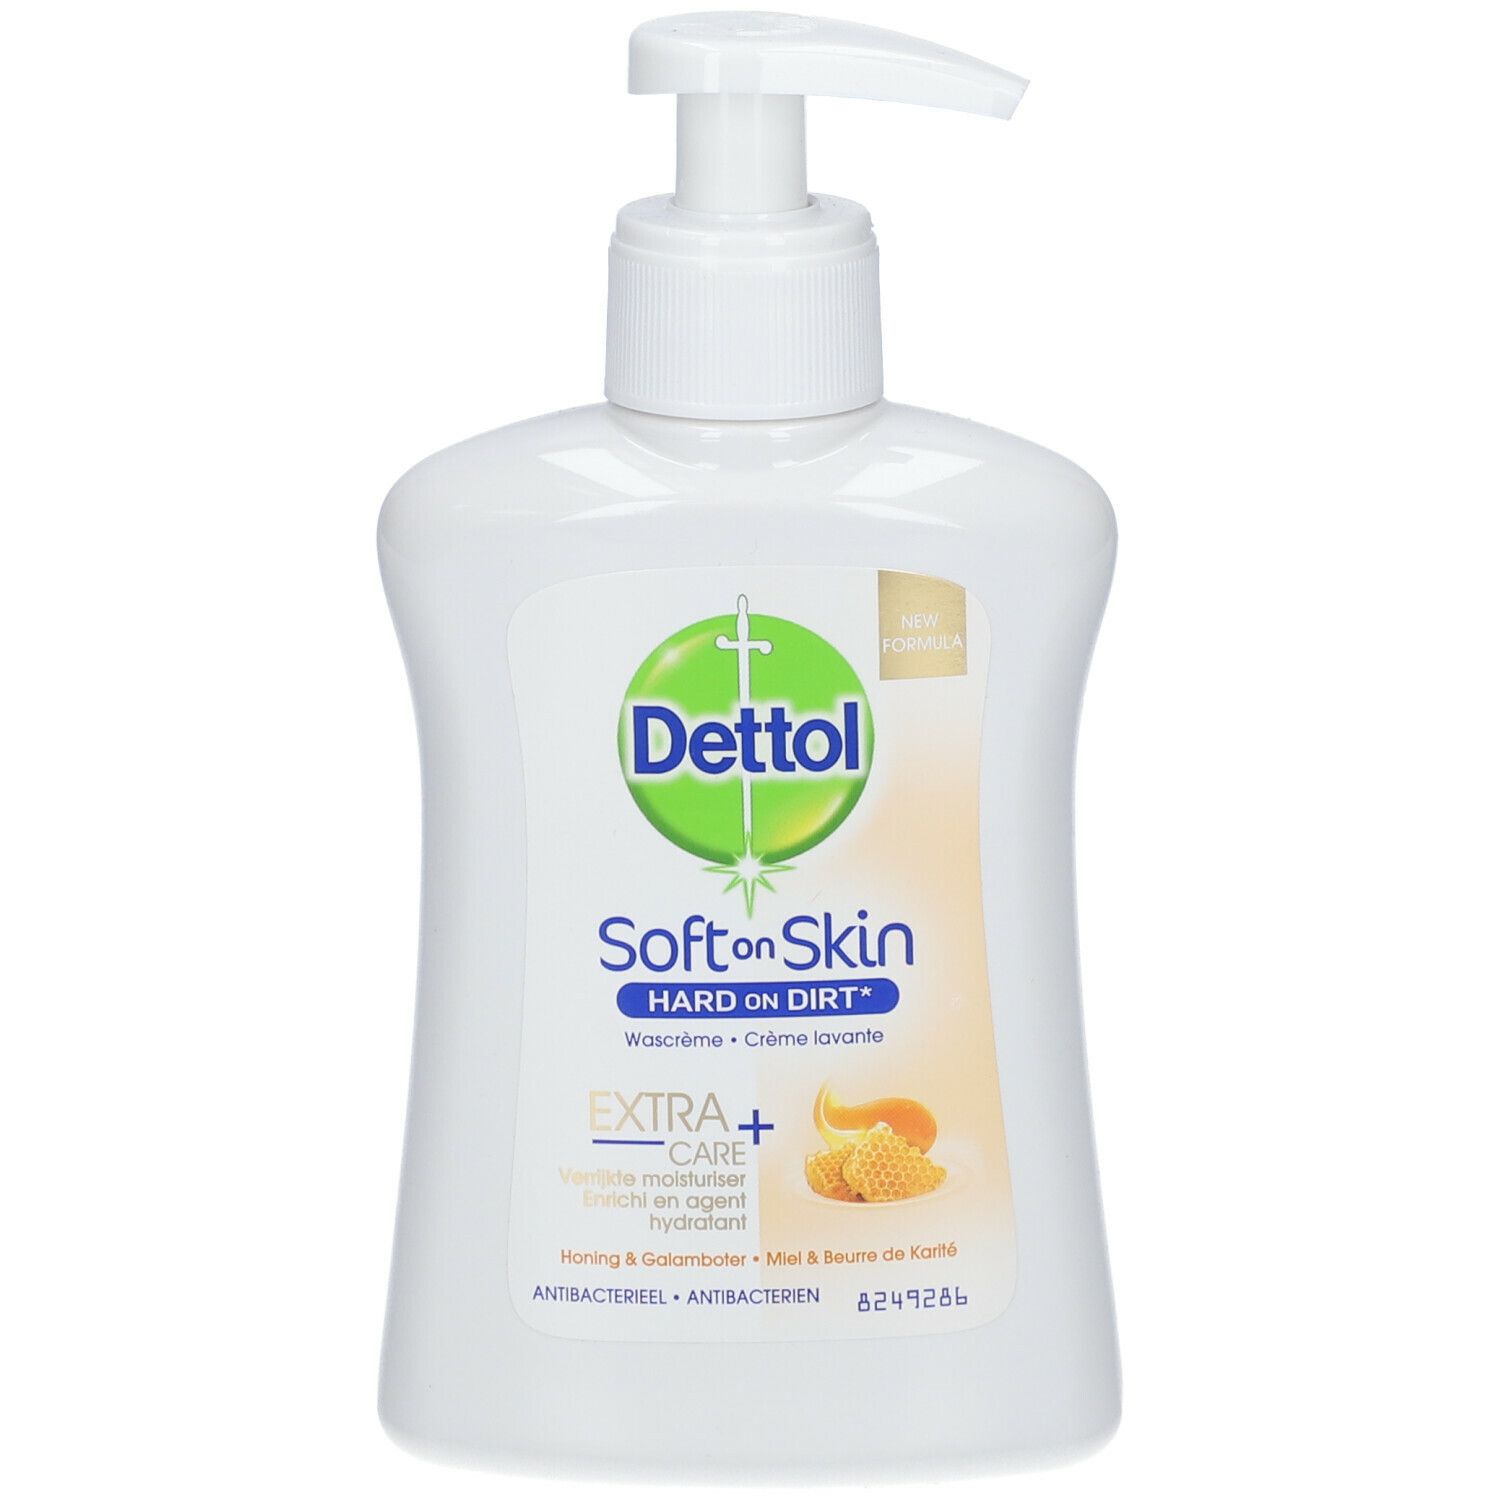 Dettol Extra Care+ Crème lavante Miel & Beurre de karité